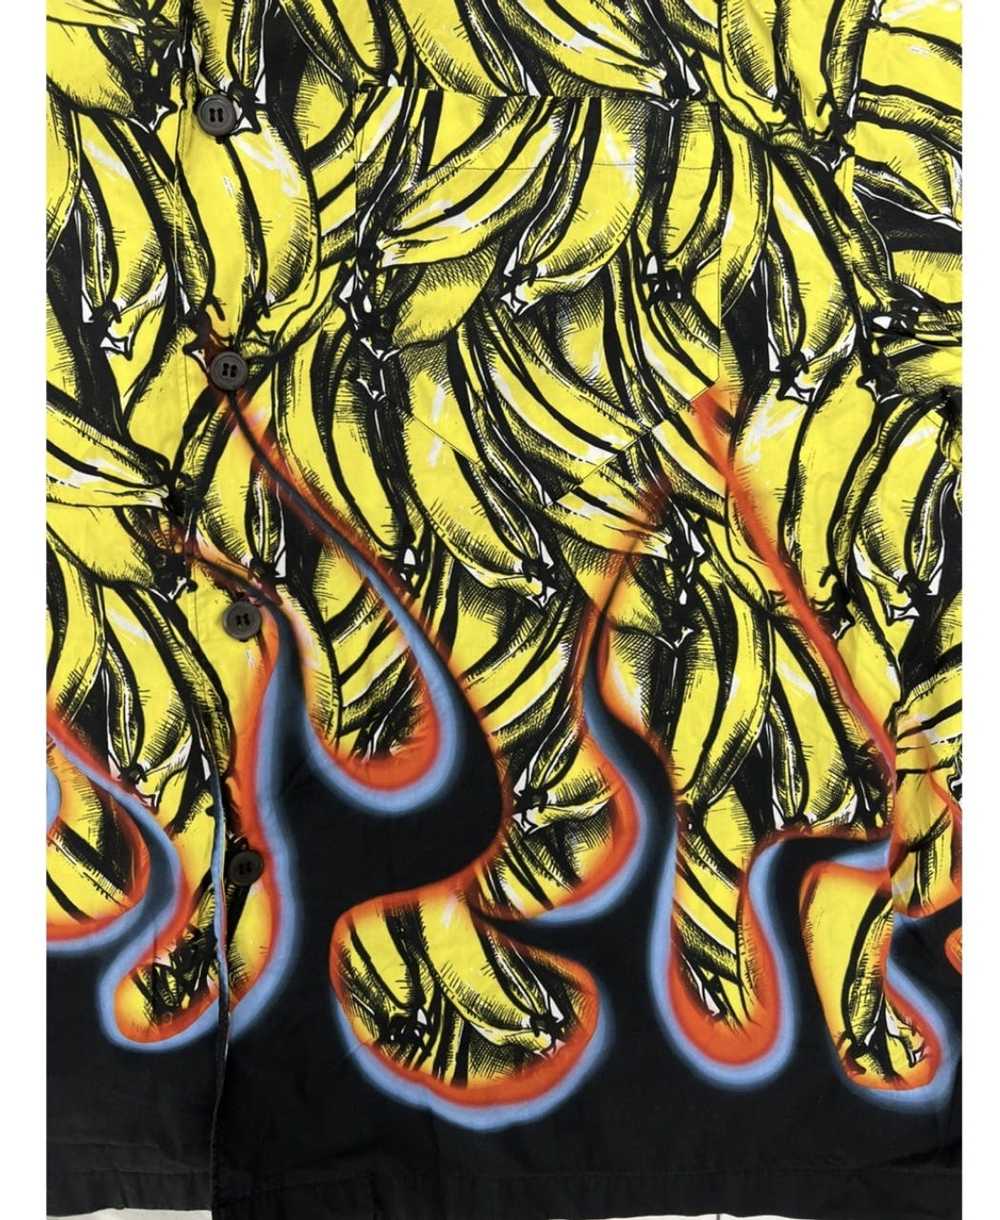 Prada Prada Banana Shirt - Gem